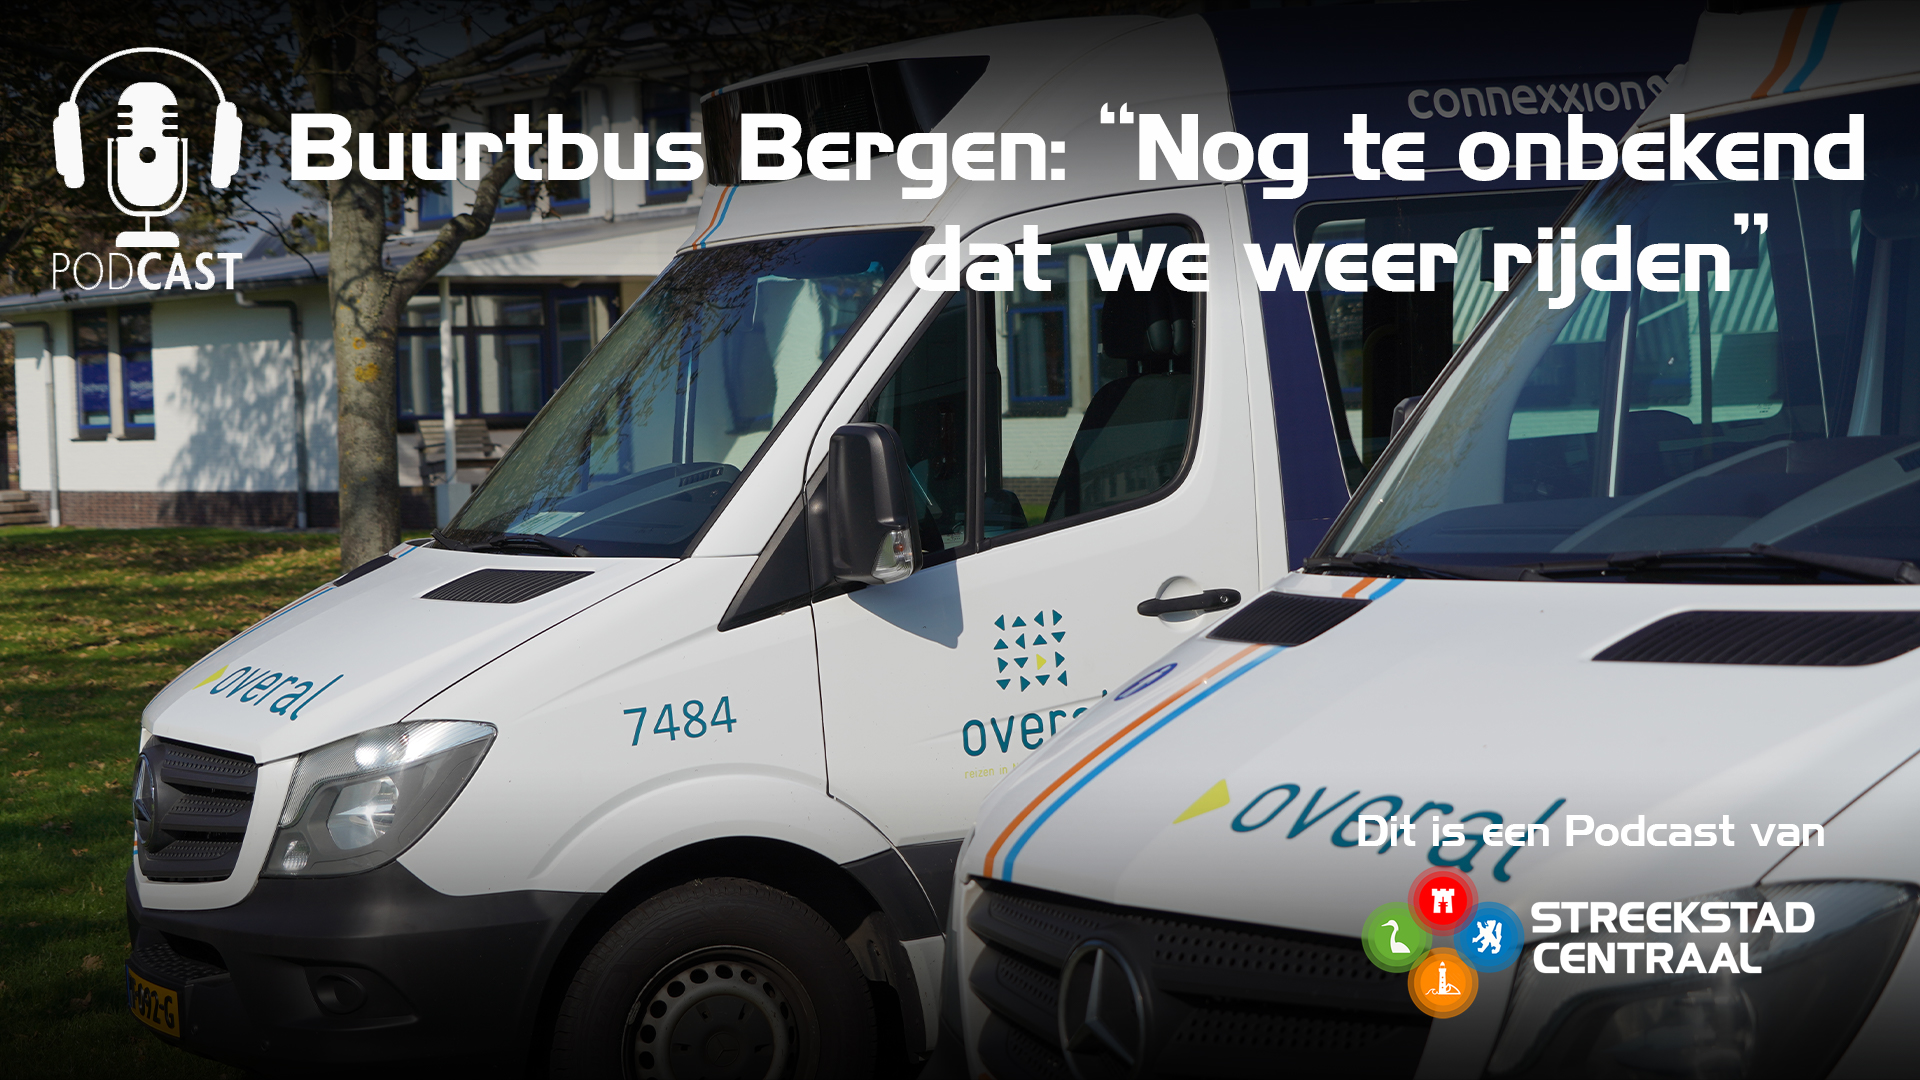 Buurtbus Bergen mist nog duizenden passagiers: “Nog te onbekend dat we weer rijden”